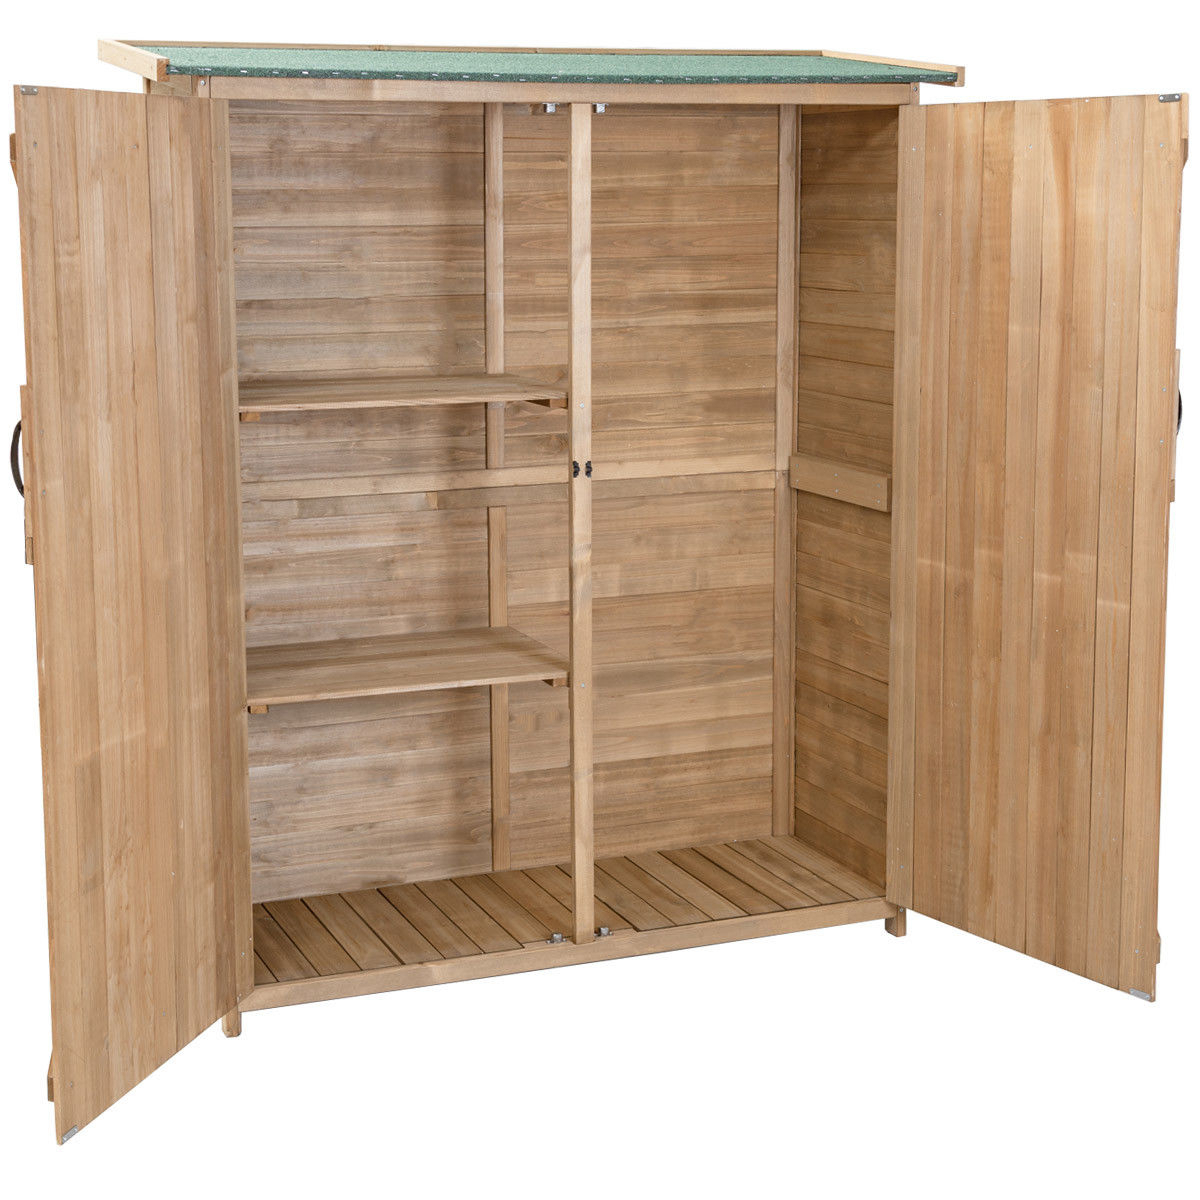 Garden Outdoor Wooden Storage Shed Cabinet Double Doors Fir Wood Lockers